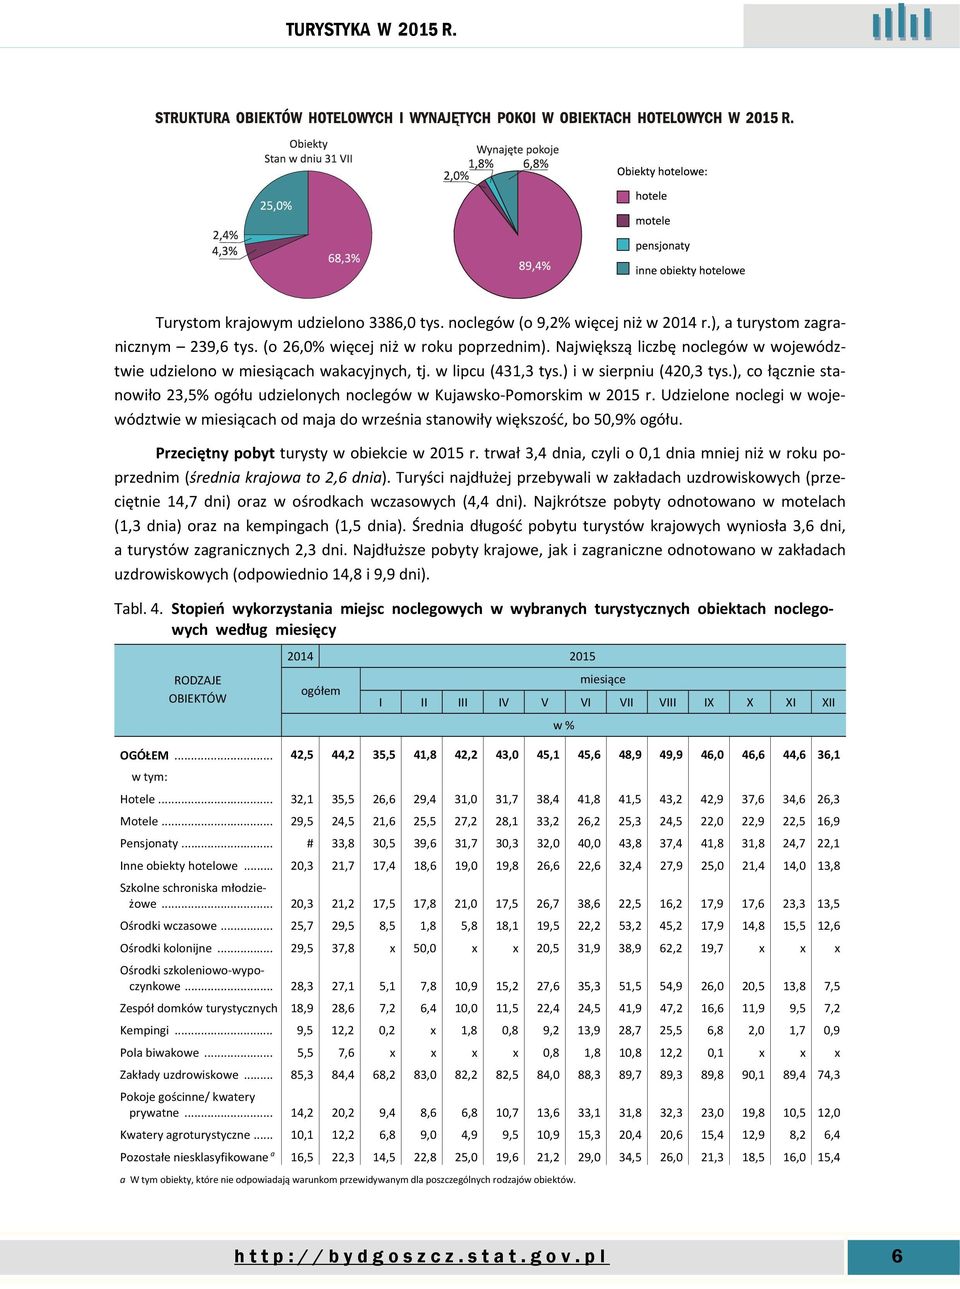 ), co łącznie stanowiło 23,5% ogółu udzielonych noclegów w Kujawsko-Pomorskim w 2015 r. Udzielone noclegi w województwie w miesiącach od maja do września stanowiły większość, bo 50,9% ogółu.